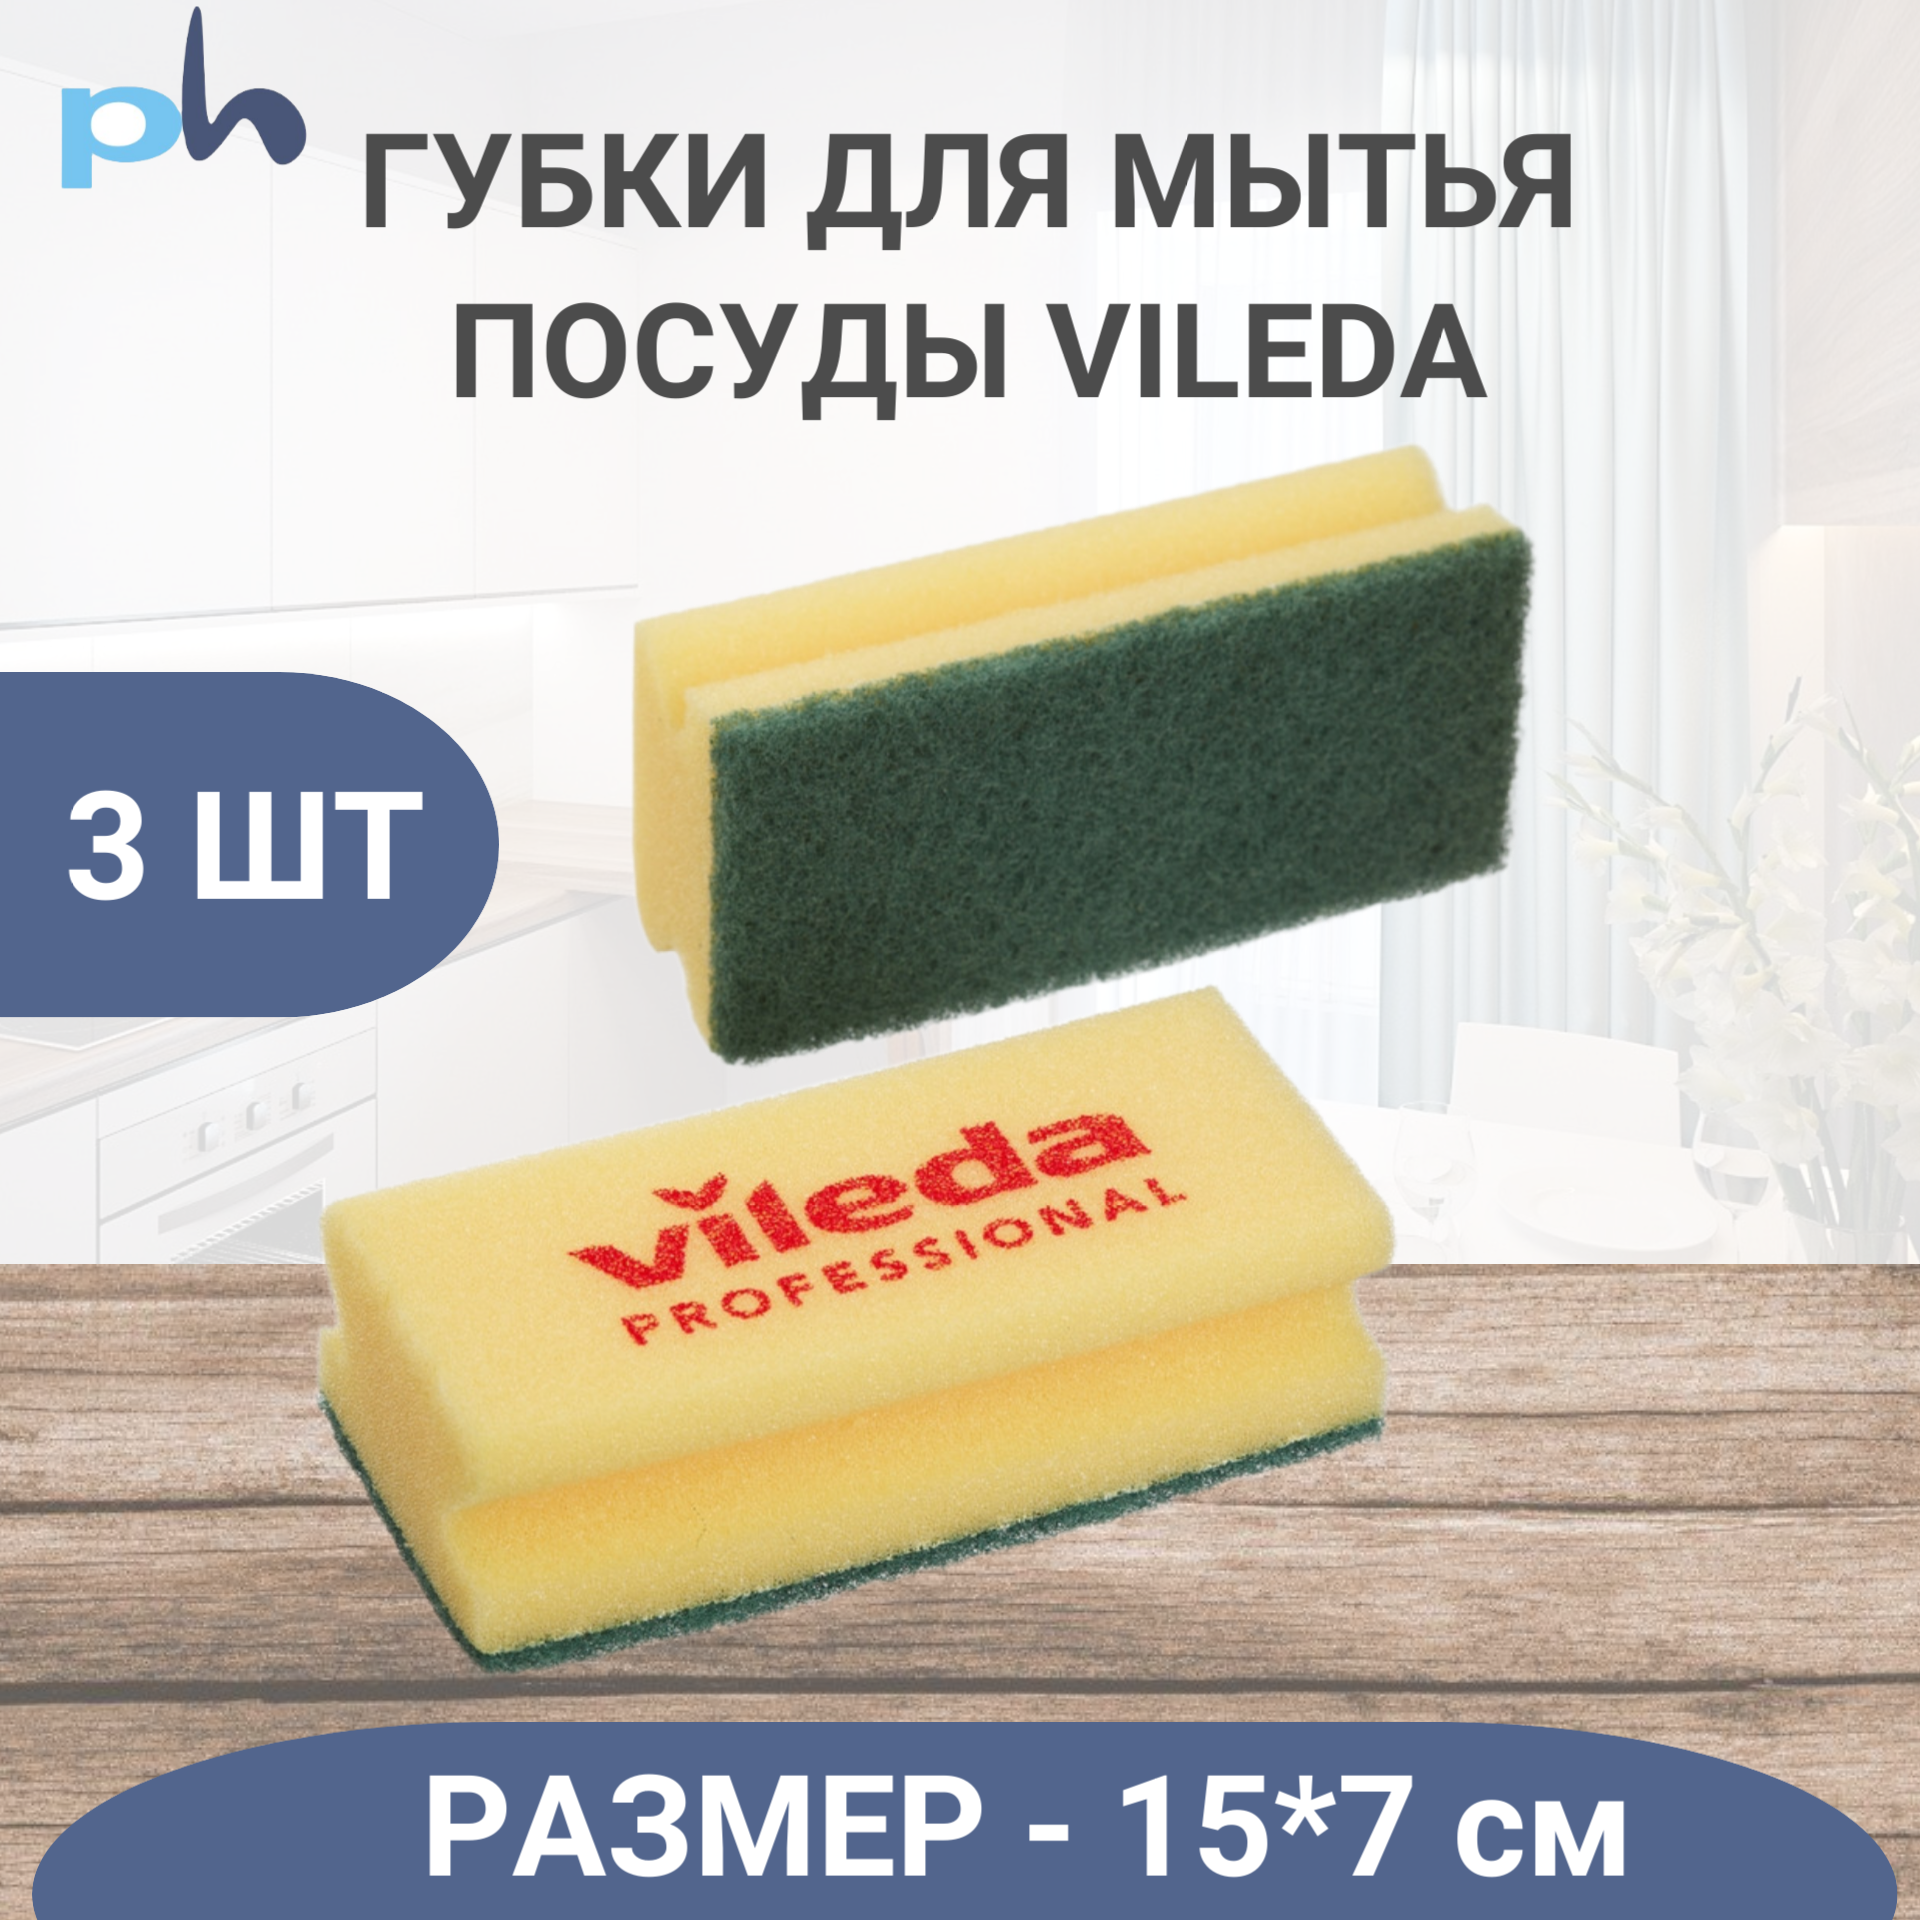 Губка для посуды и уборки Vileda Professional, cредняя жесткость, 7х15 см, 3 шт/уп